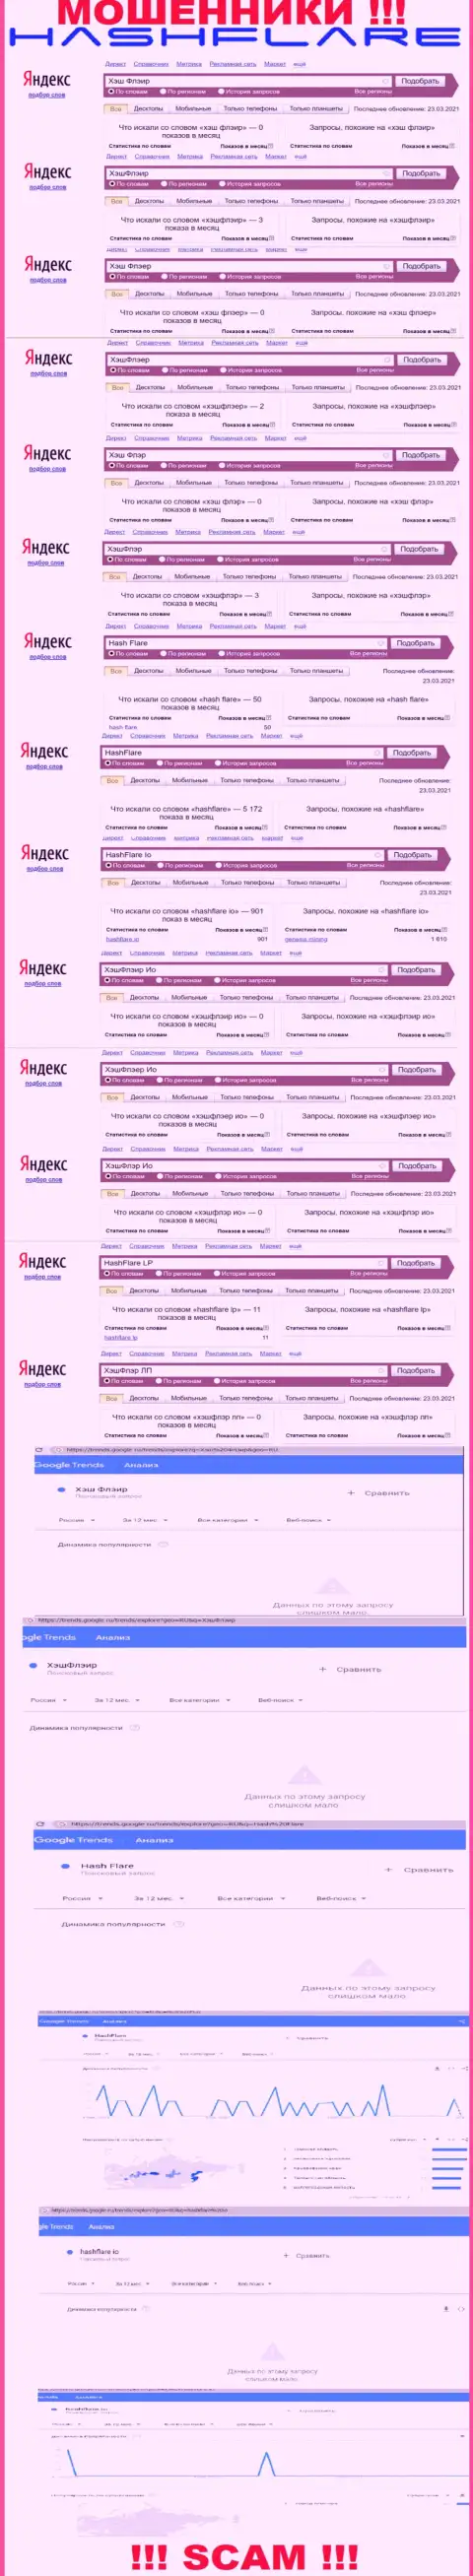 Суммарное число online-запросов в поисковиках сети internet по бренду мошенников HashFlare LP